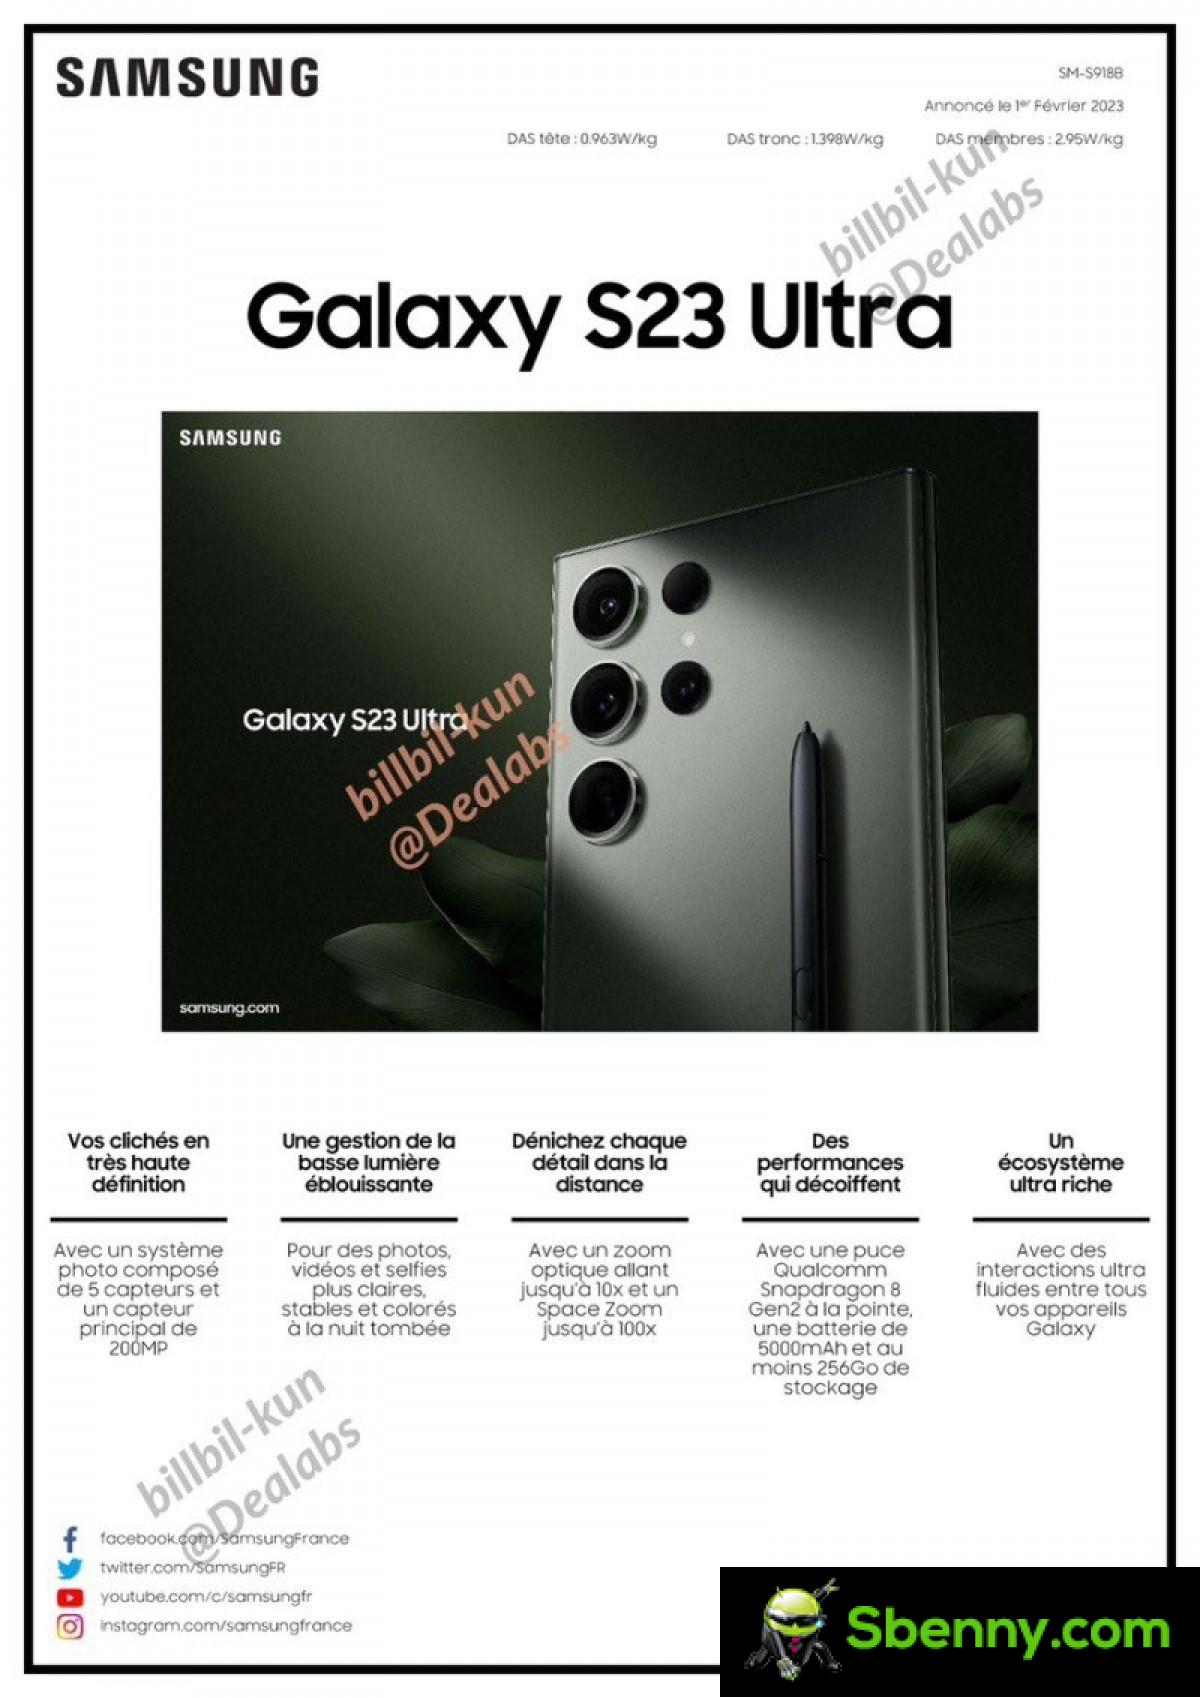 De technische fiche van de Samsung Galaxy S23 Ultra lekt volledig uit